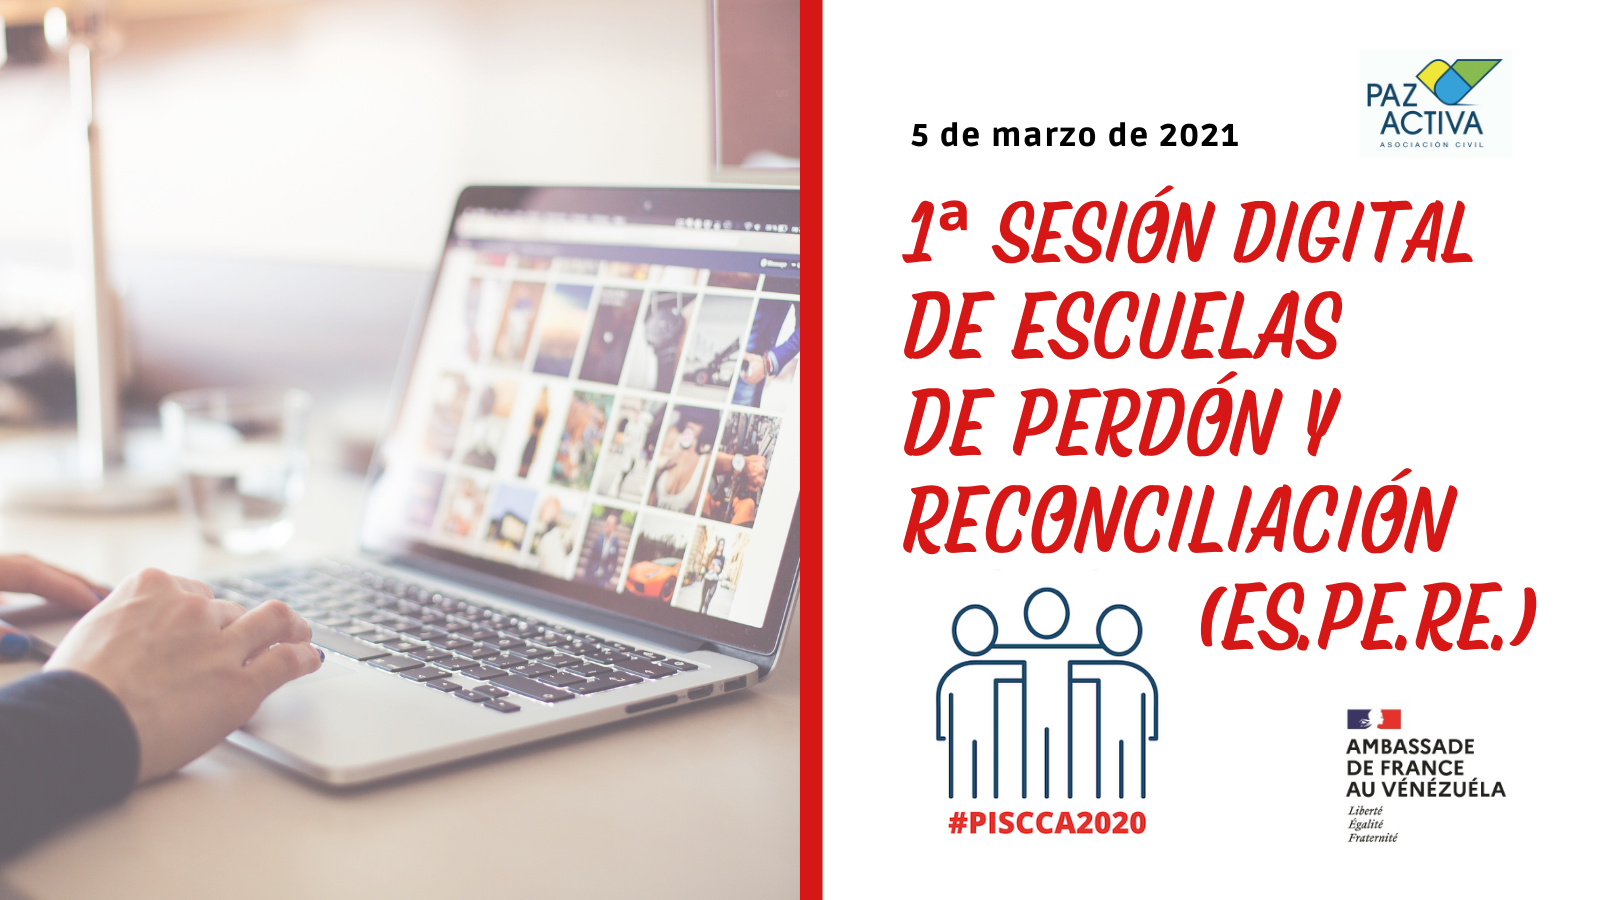 Comienza La 1ª Sesión Digital De Escuelas De Perdón Y Reconciliación (ES.PE.RE.)